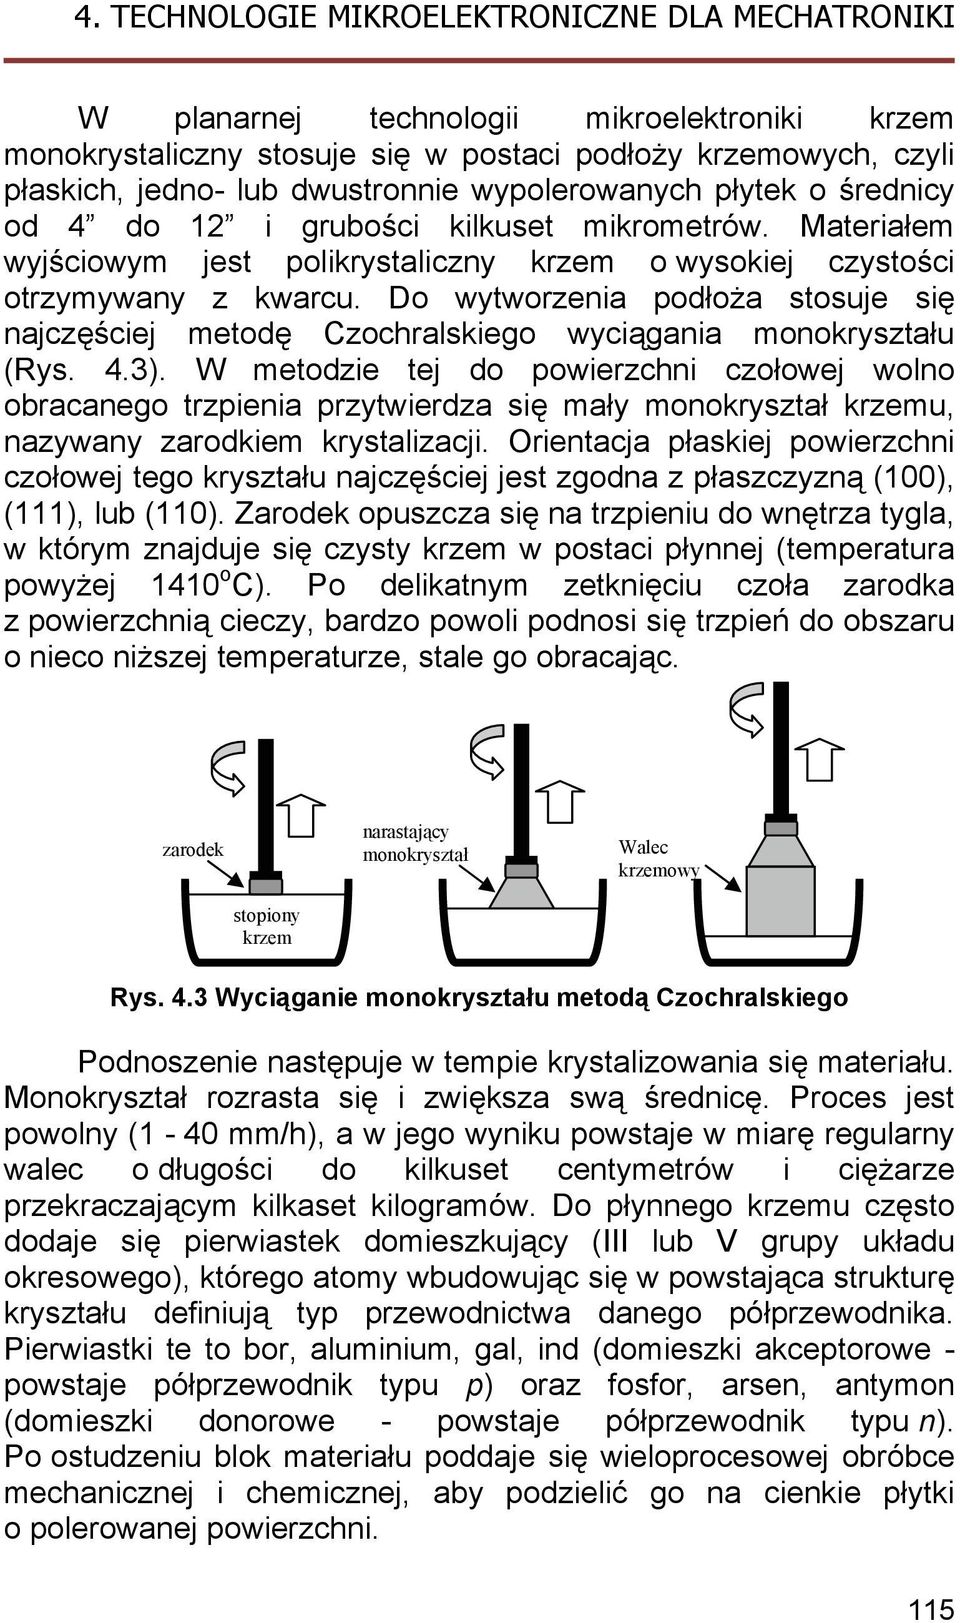 Do wytworzenia podłoża stosuje się najczęściej metodę Czochralskiego wyciągania monokryształu (Rys. 4.3).